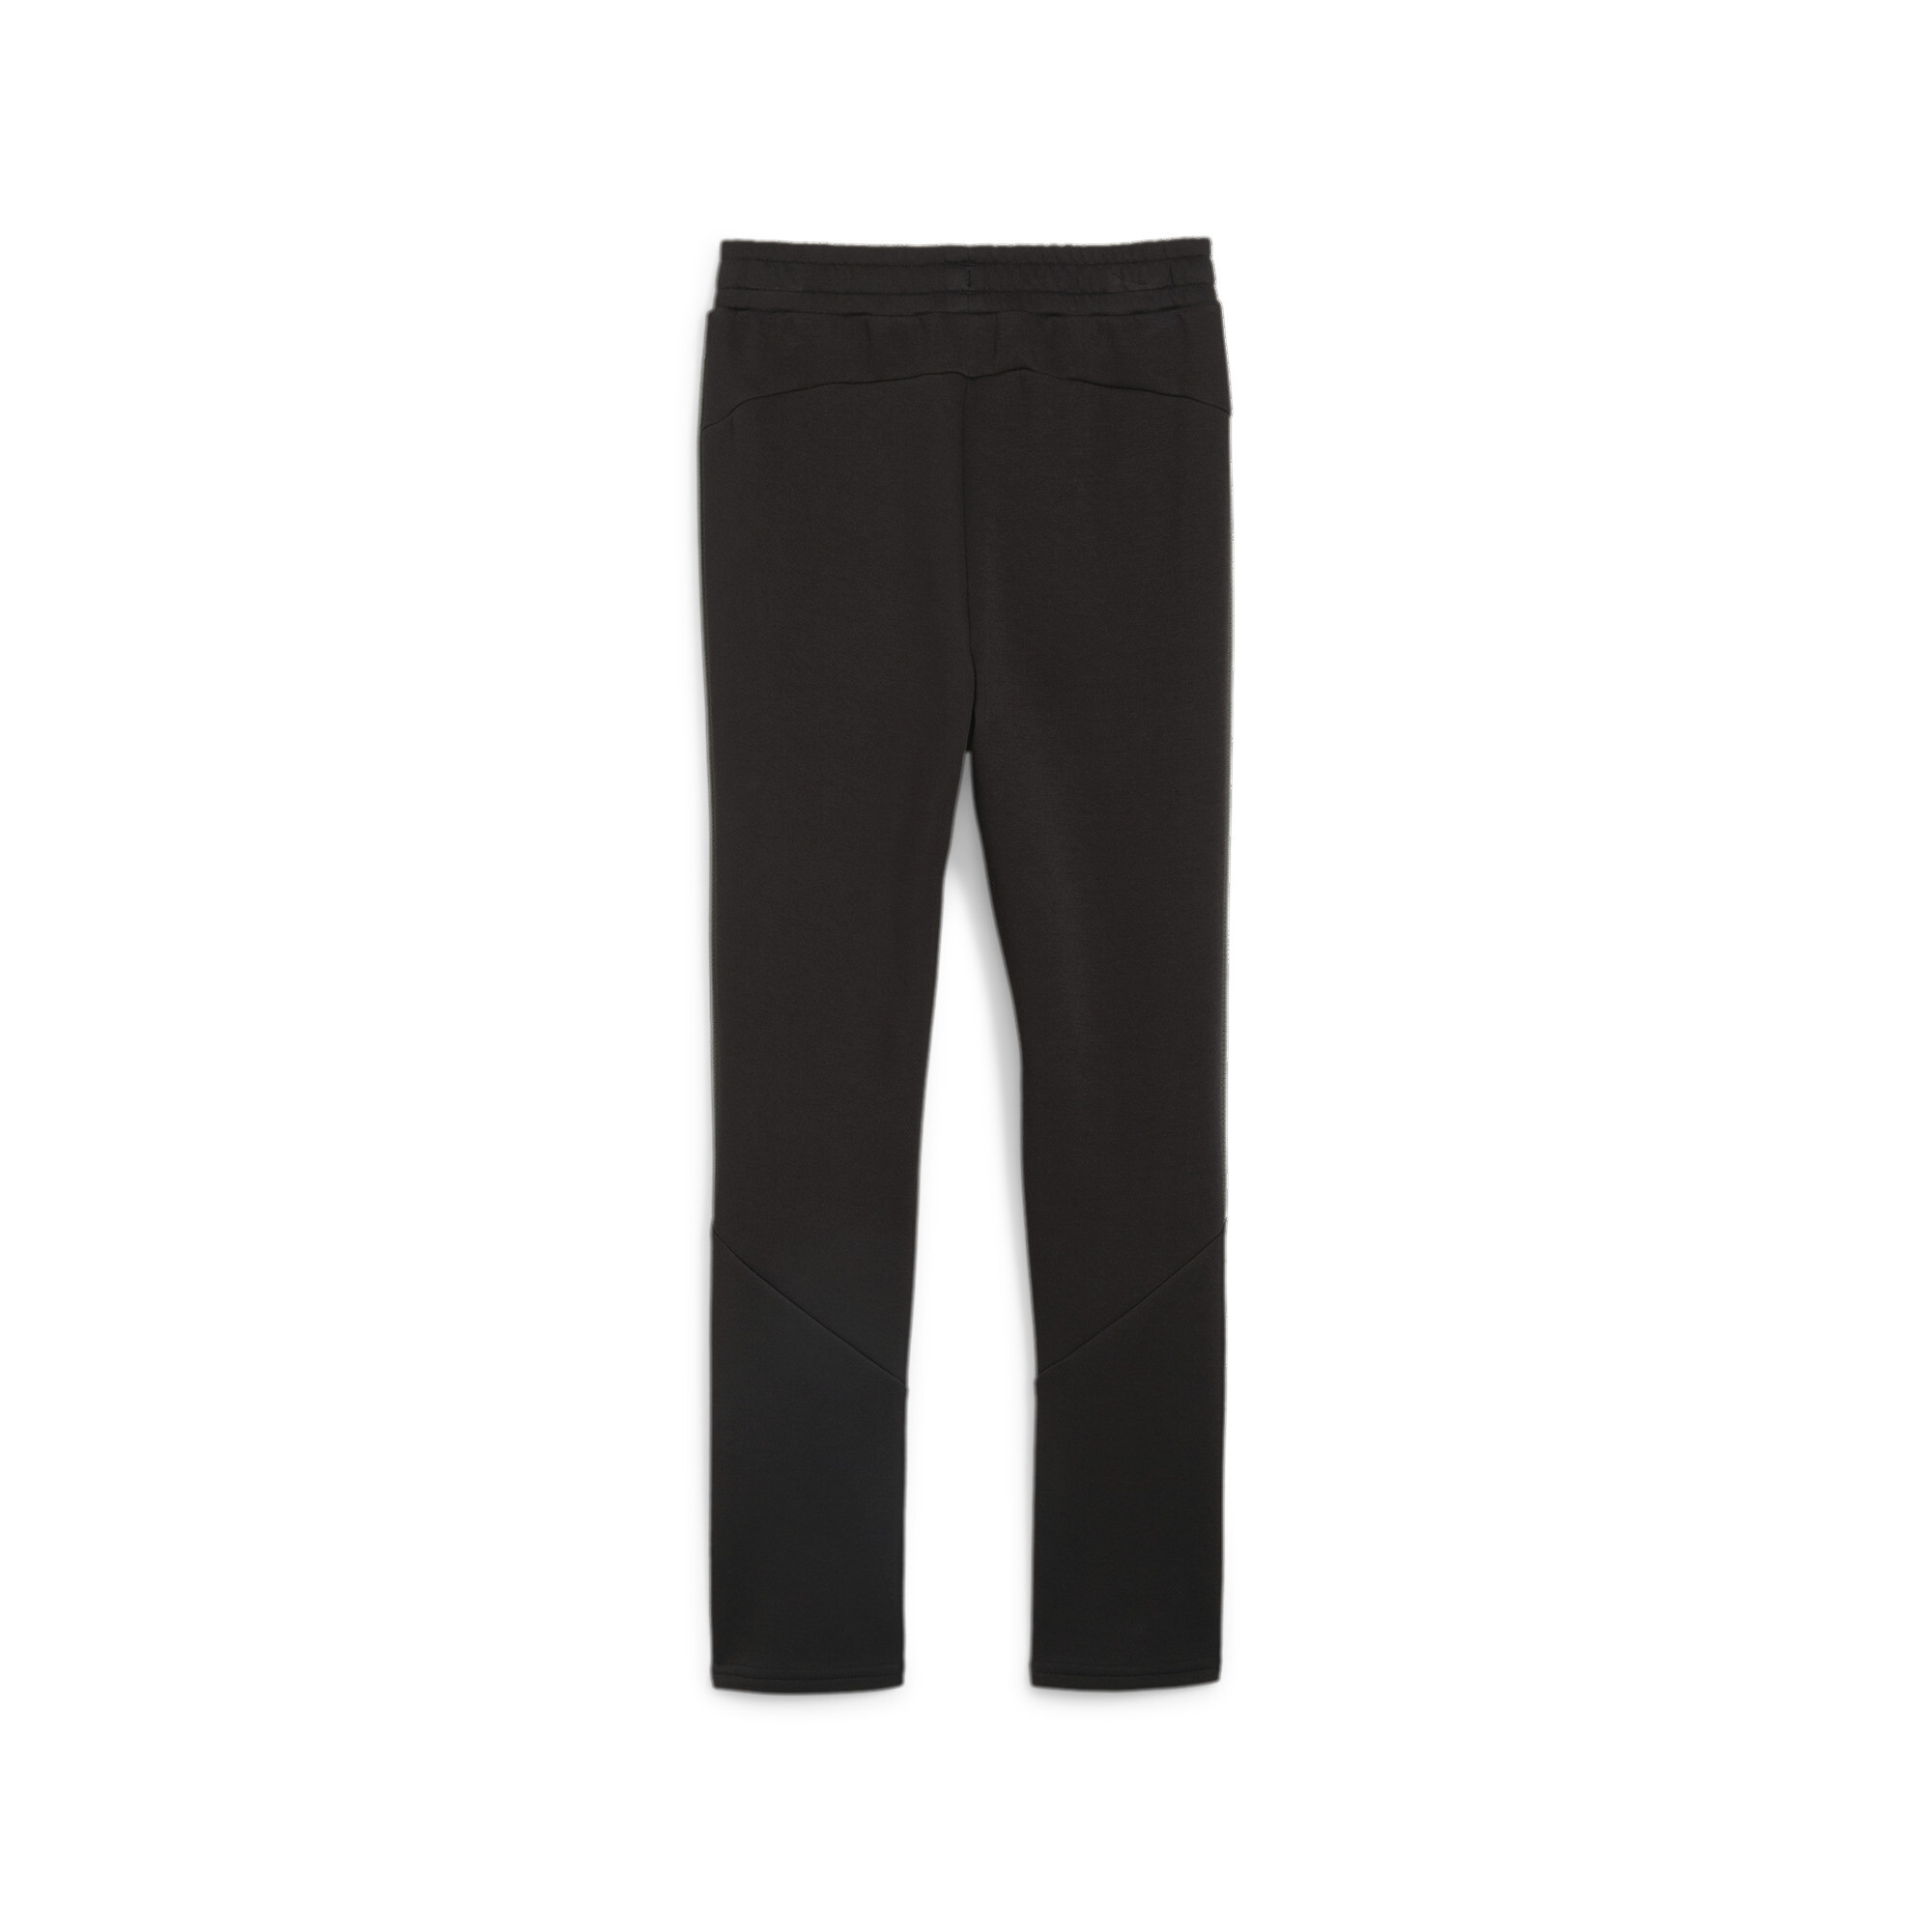 PUMA EVOSTRIPE Sweatpants In Black, Size 15-16 Youth